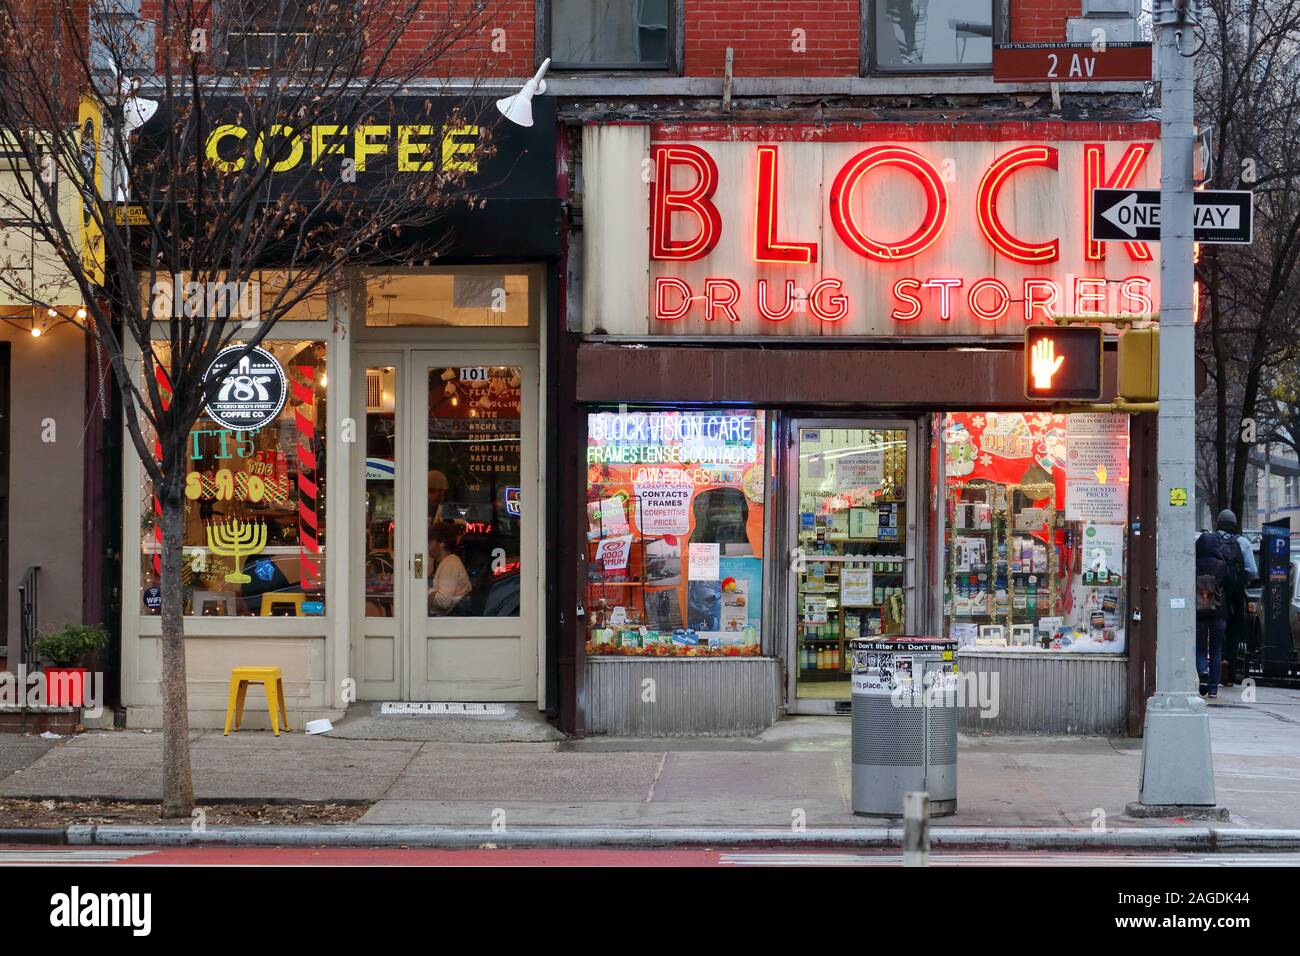 787 Kaffee, Block Drug Store, 101 2nd Ave, New York, NY. Außen storefronts einer Puerto Rican bezogenen Kaffee und alte Zeit Drug Store in Manhattan. Stockfoto